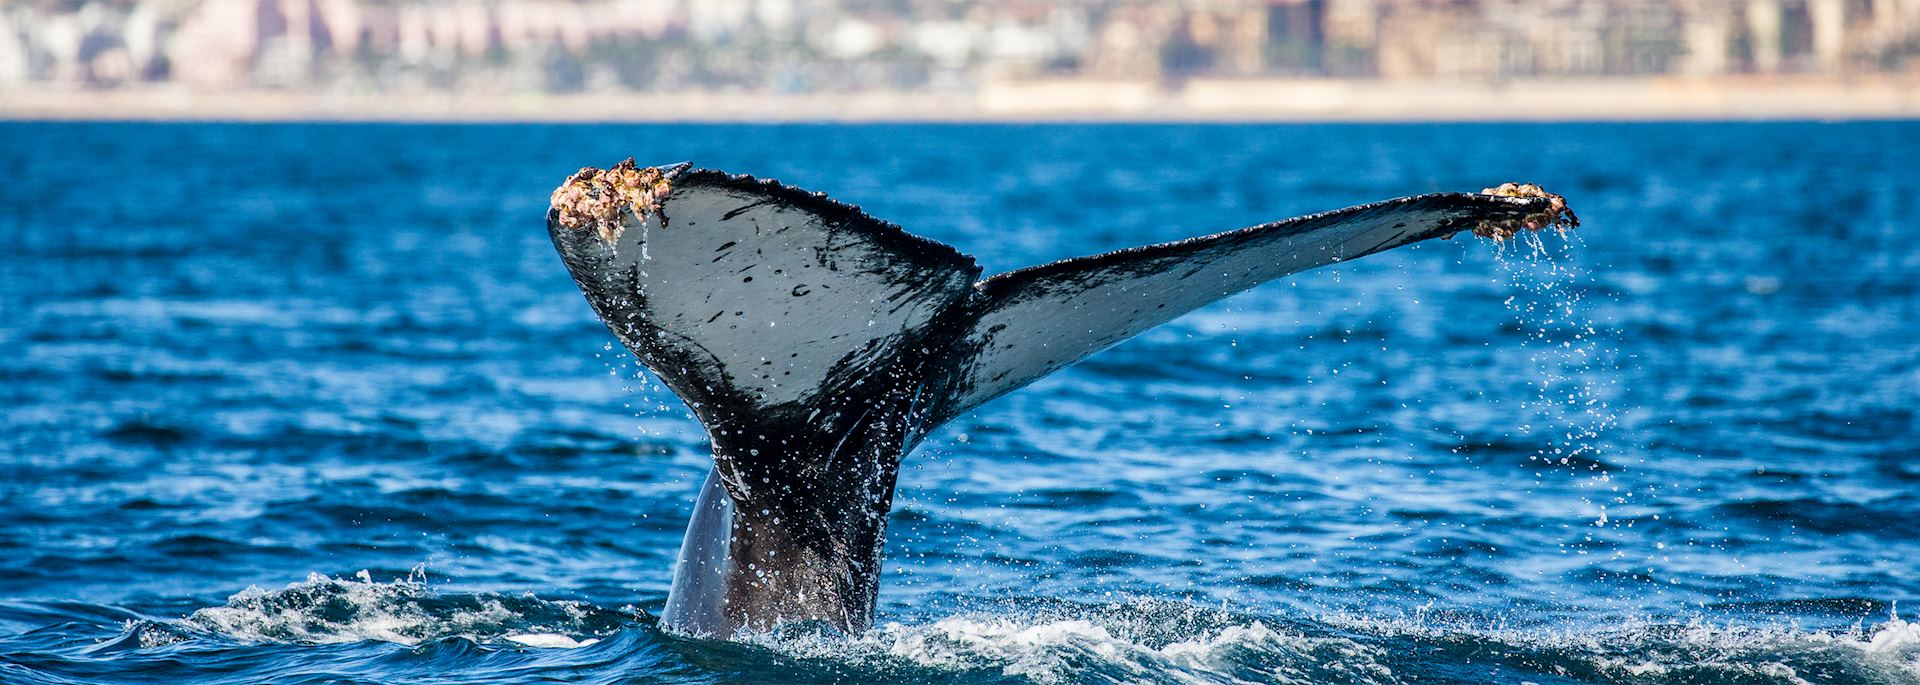 Humpback whale, Sea of Cortez